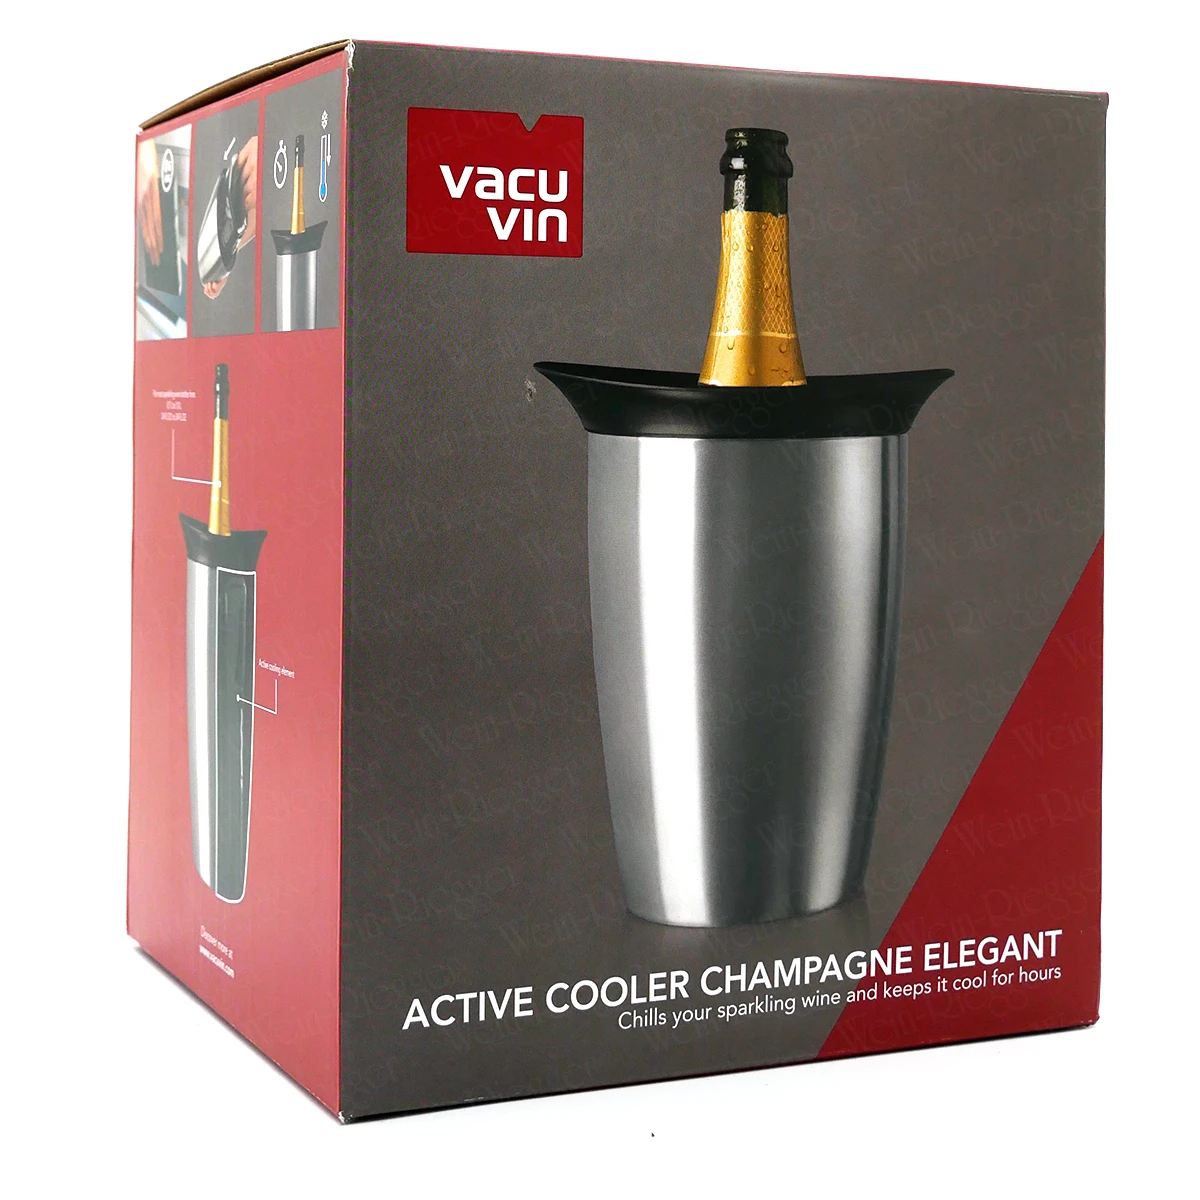 Vacu Vin Active Cooler Champagne Elegant